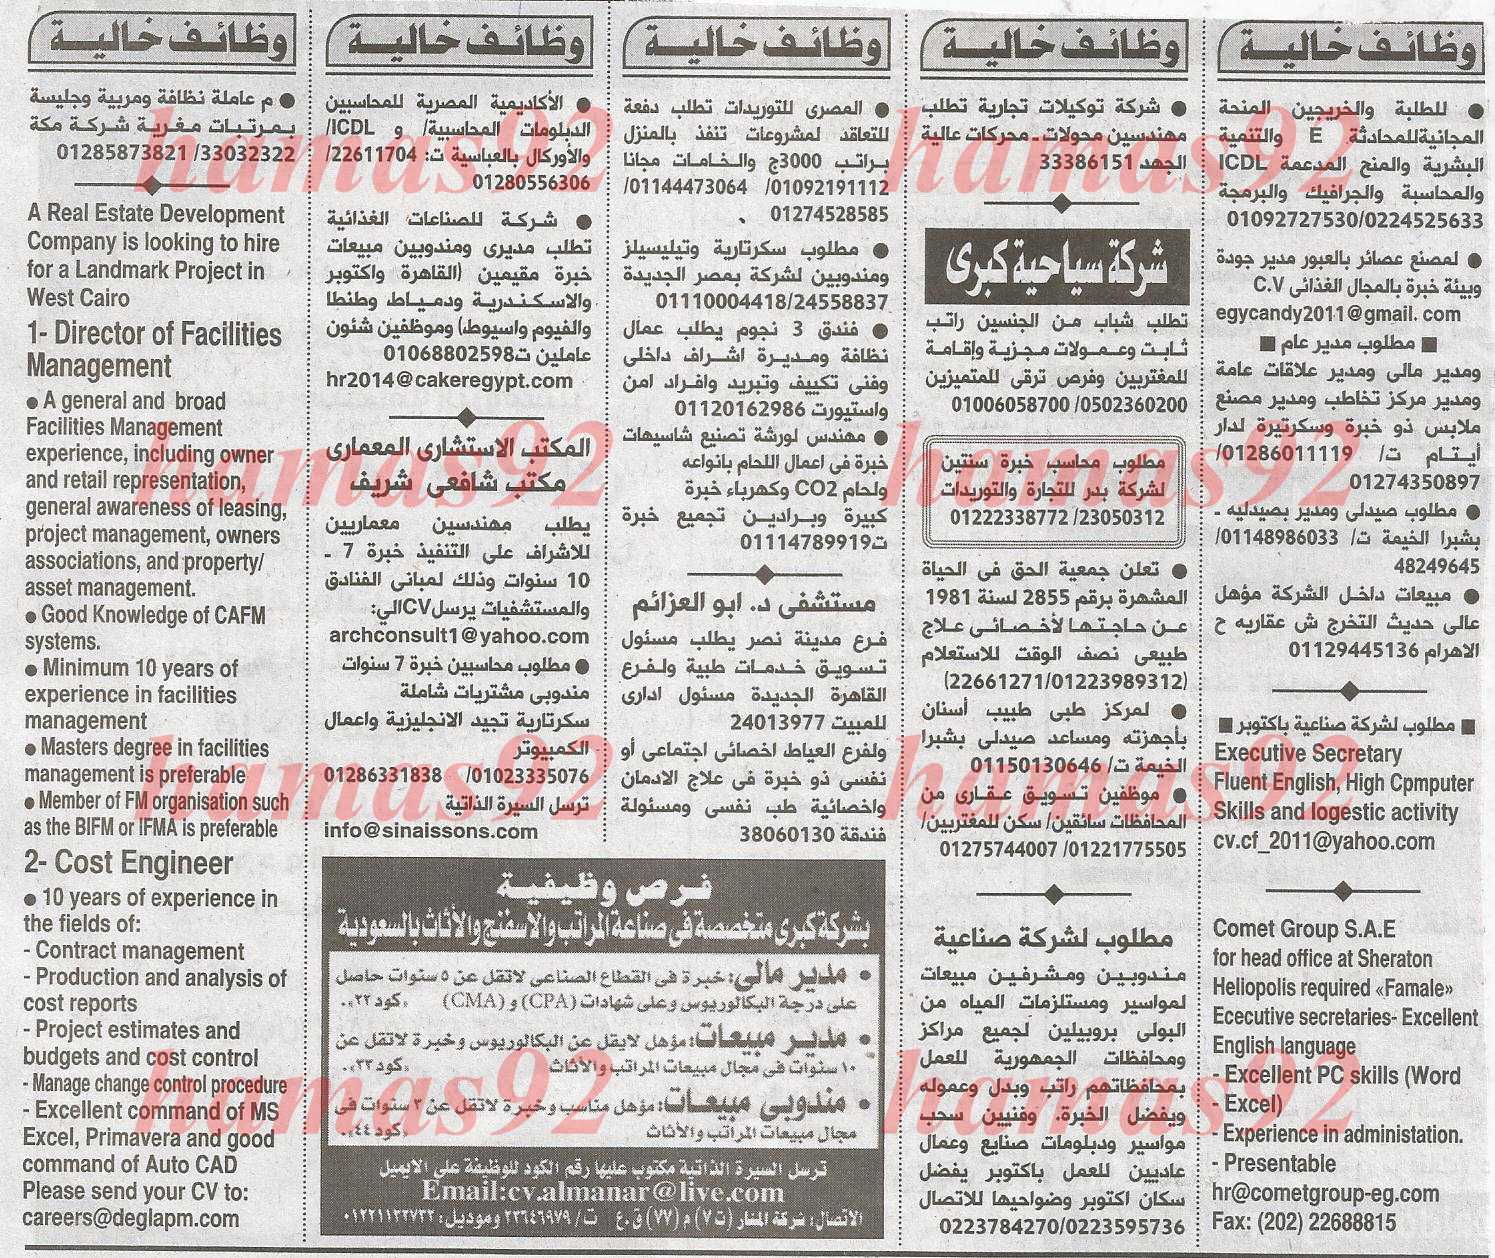 وظائف جريدة الاهرام المصرية اليوم الجمعة 14-2-2014 ،، وظائف خالية في مصر اليوم 14-2-2014